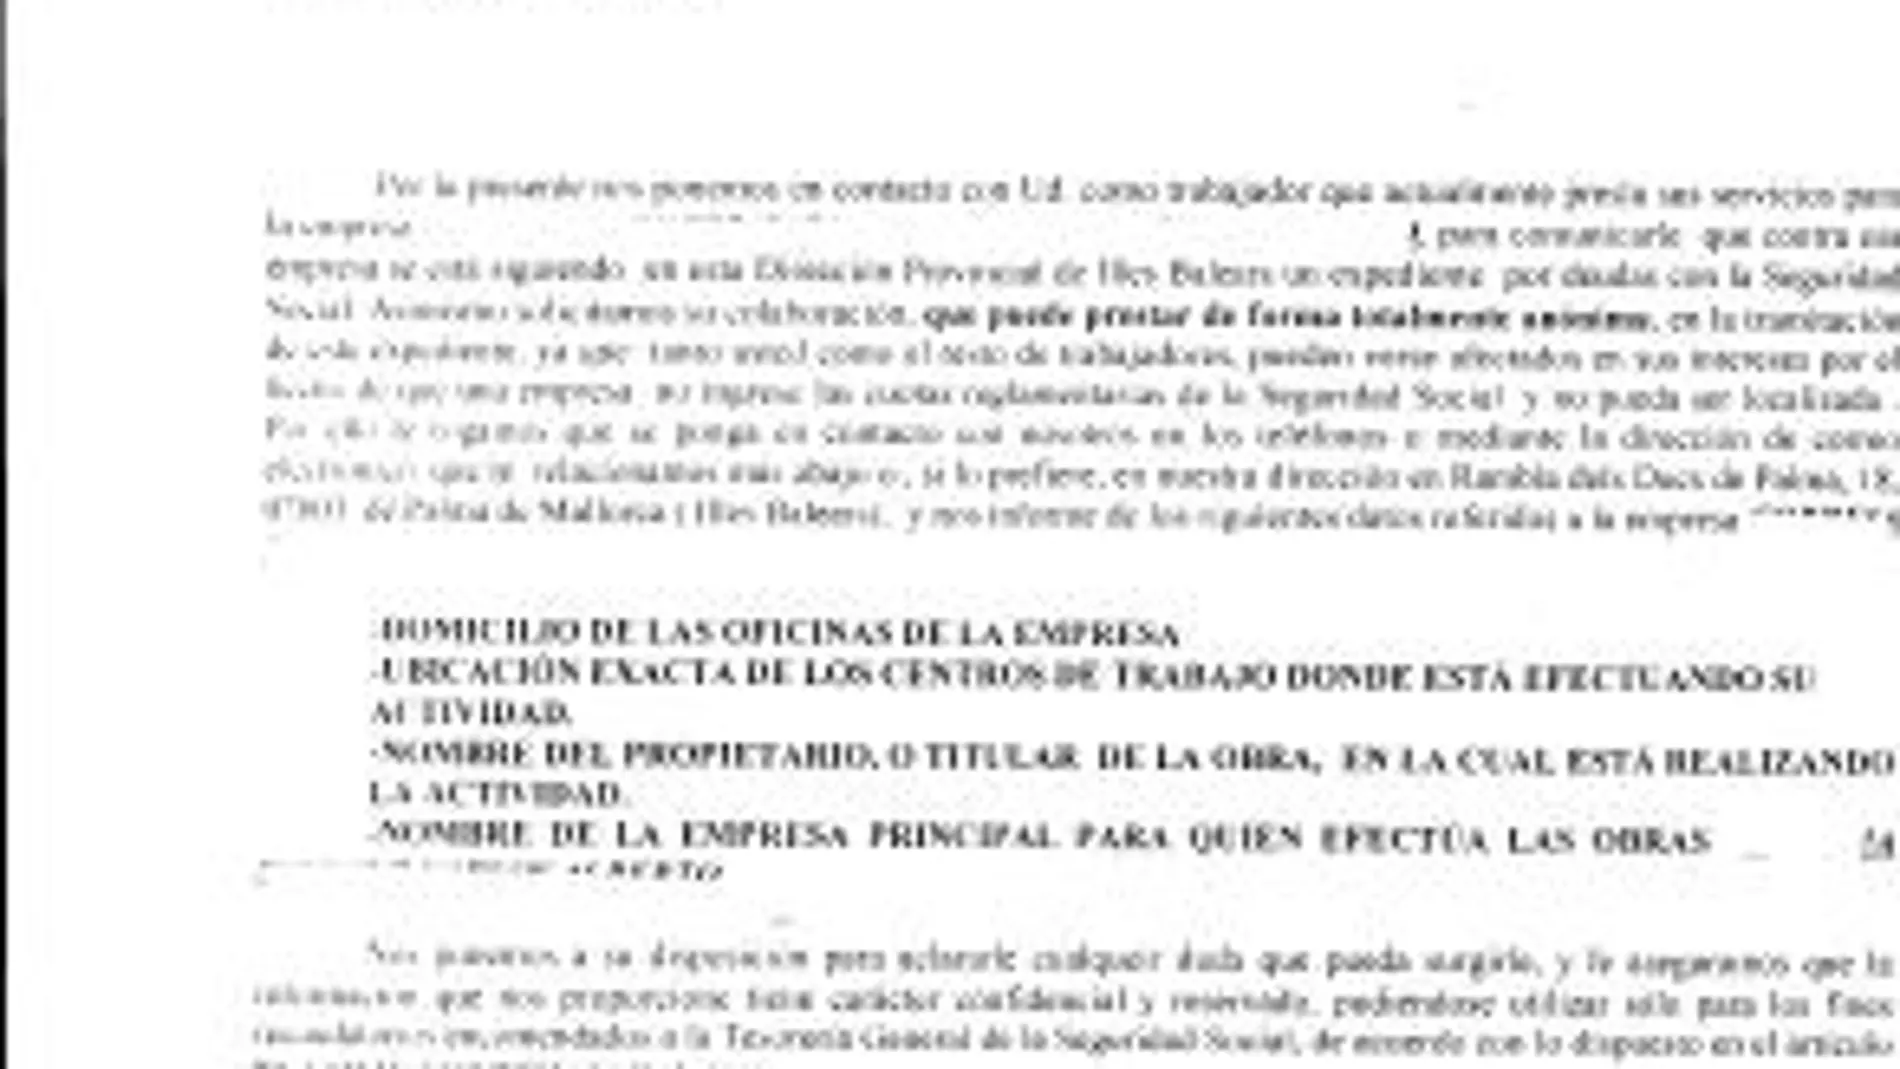 Trabajo confirma las cartas de delación en Baleares y abre una investigación